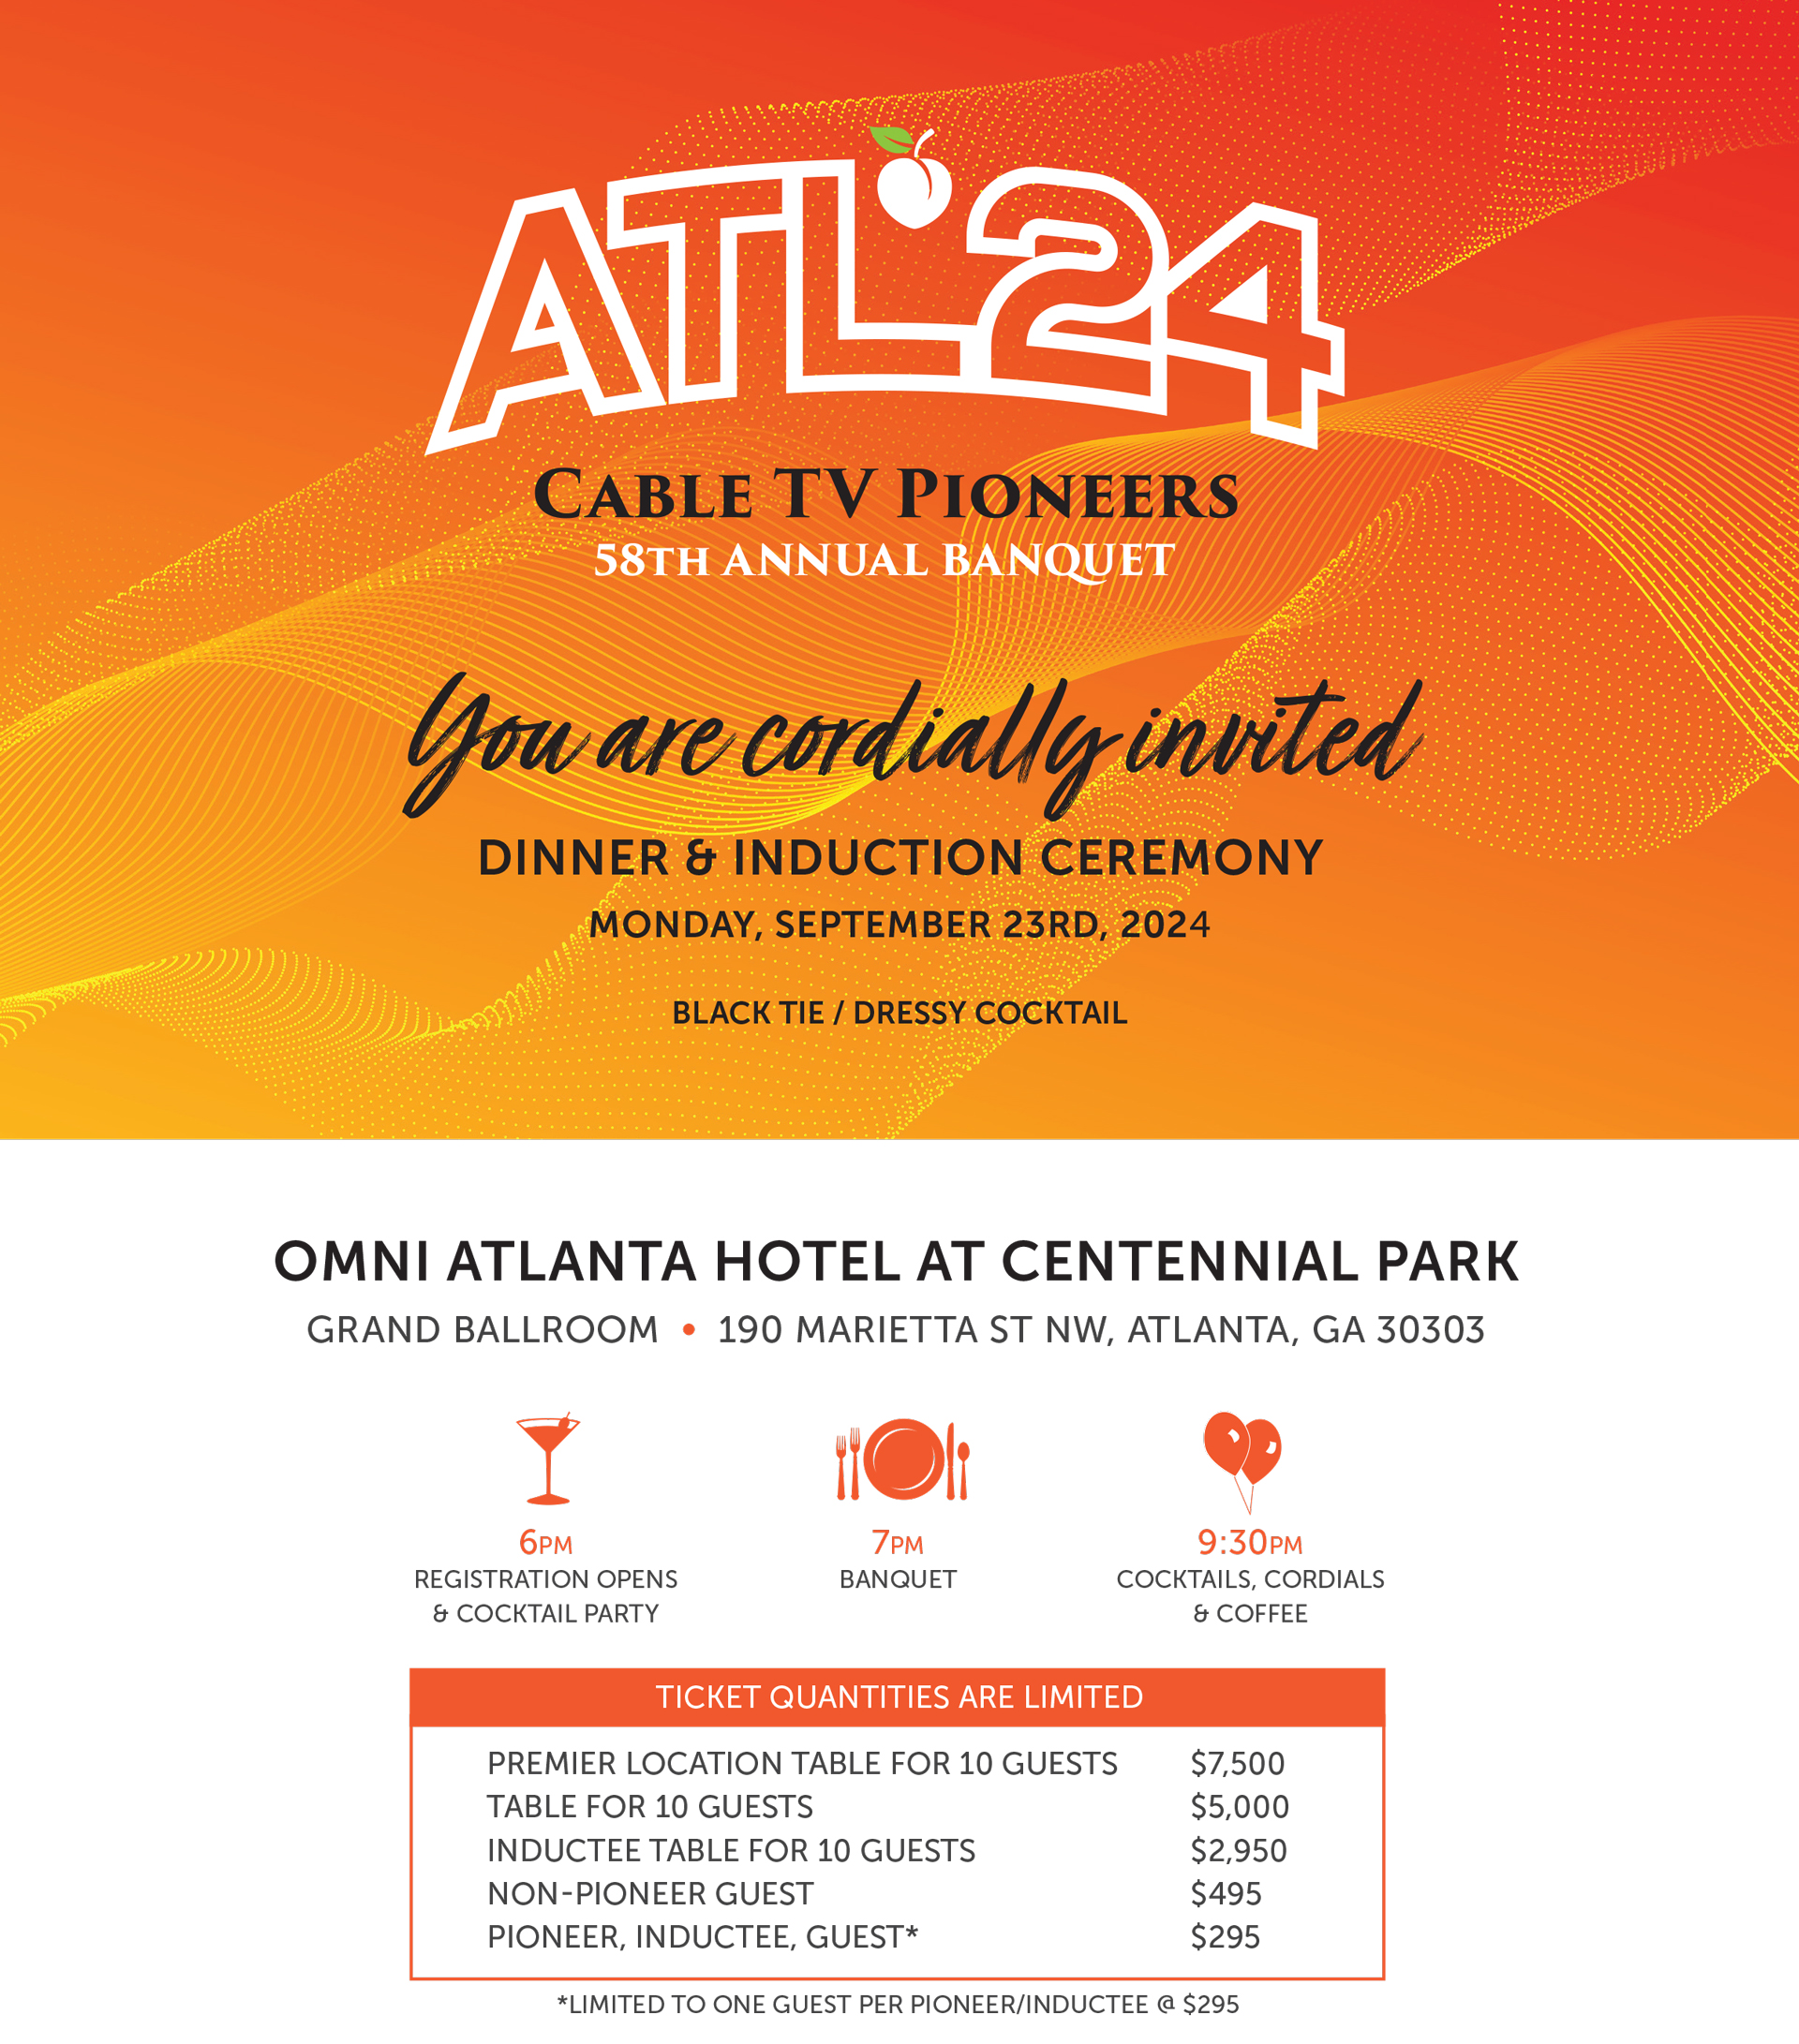 ATL24_PioneerDinner_Invitation_2-2